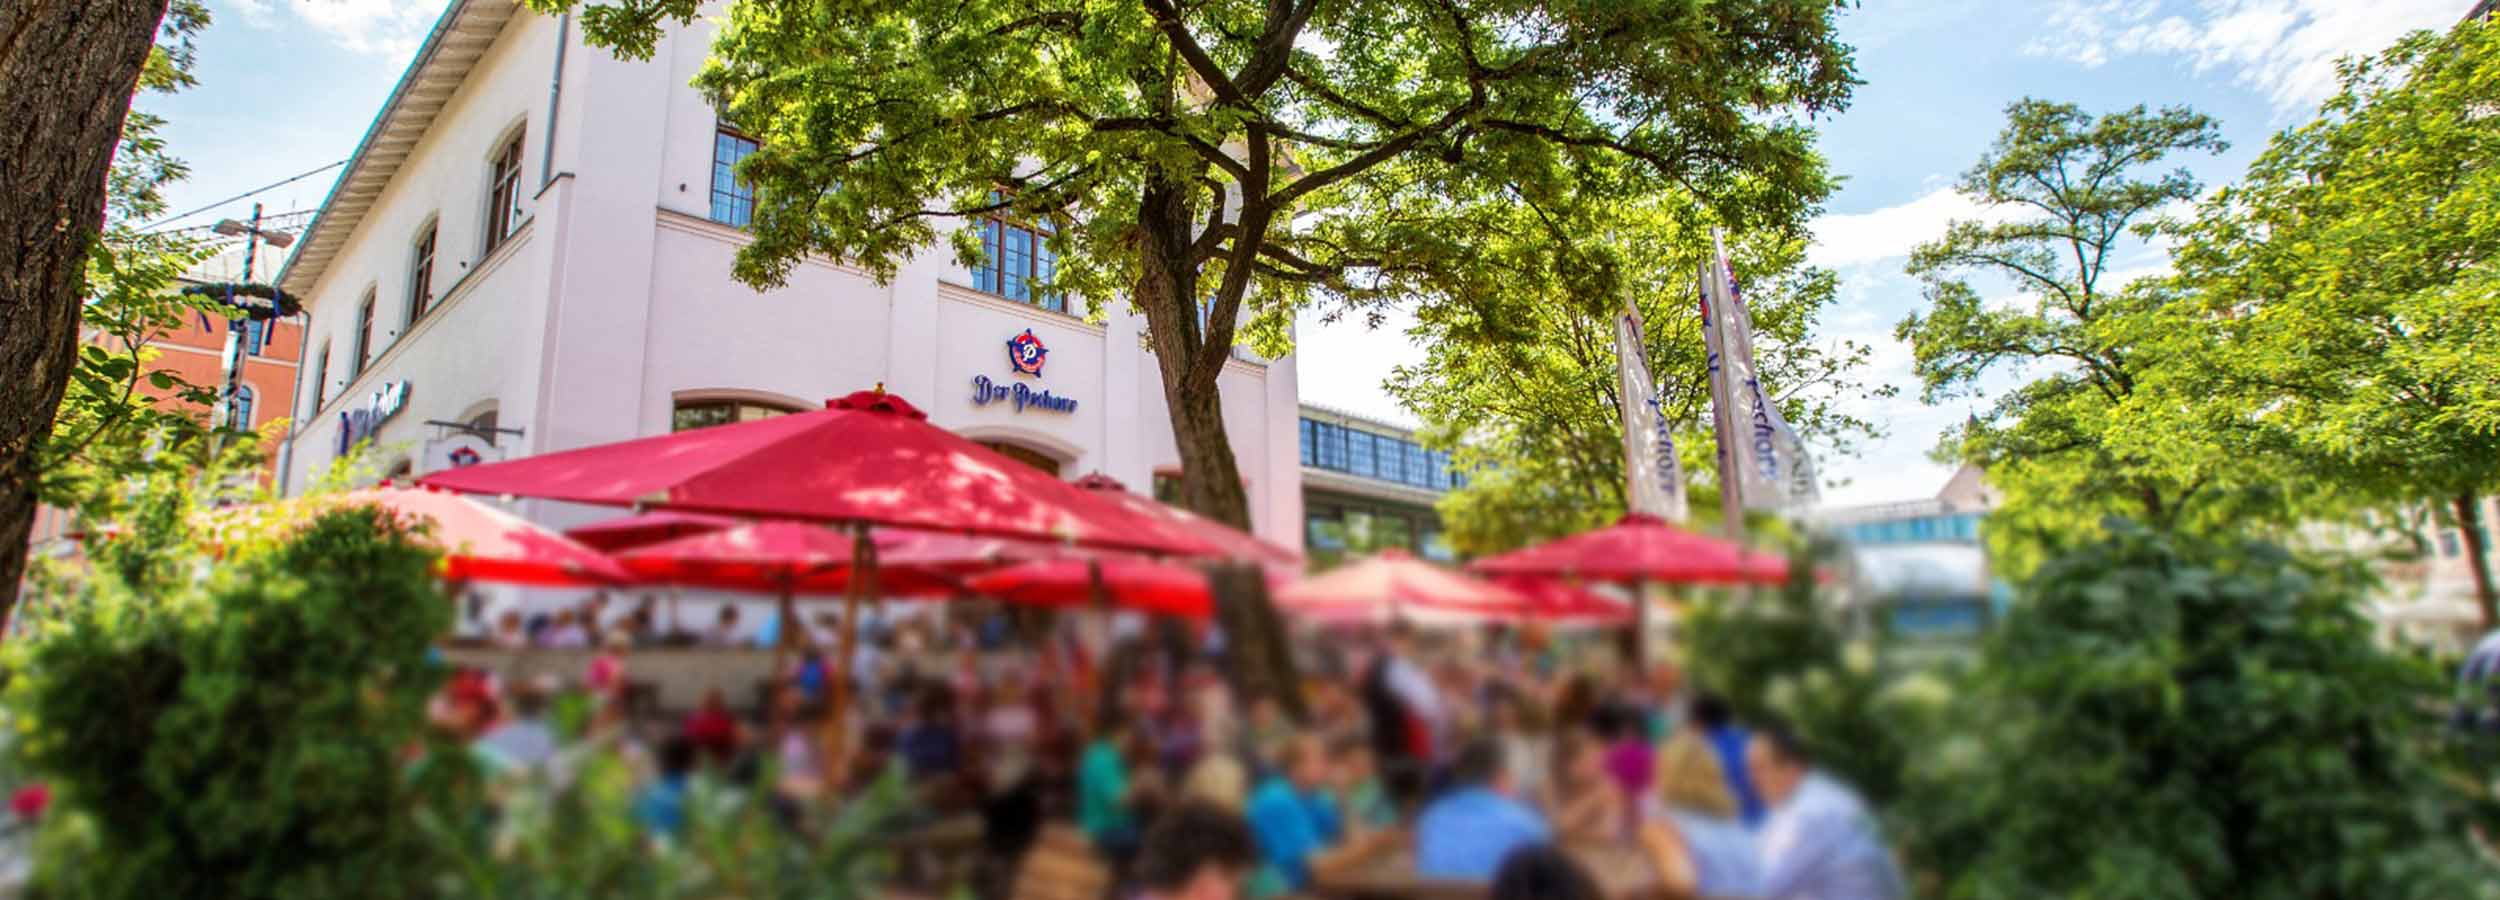 Biergarten – Wirtsgarten in der Münchner Innenstadt am Viktualienmarkt